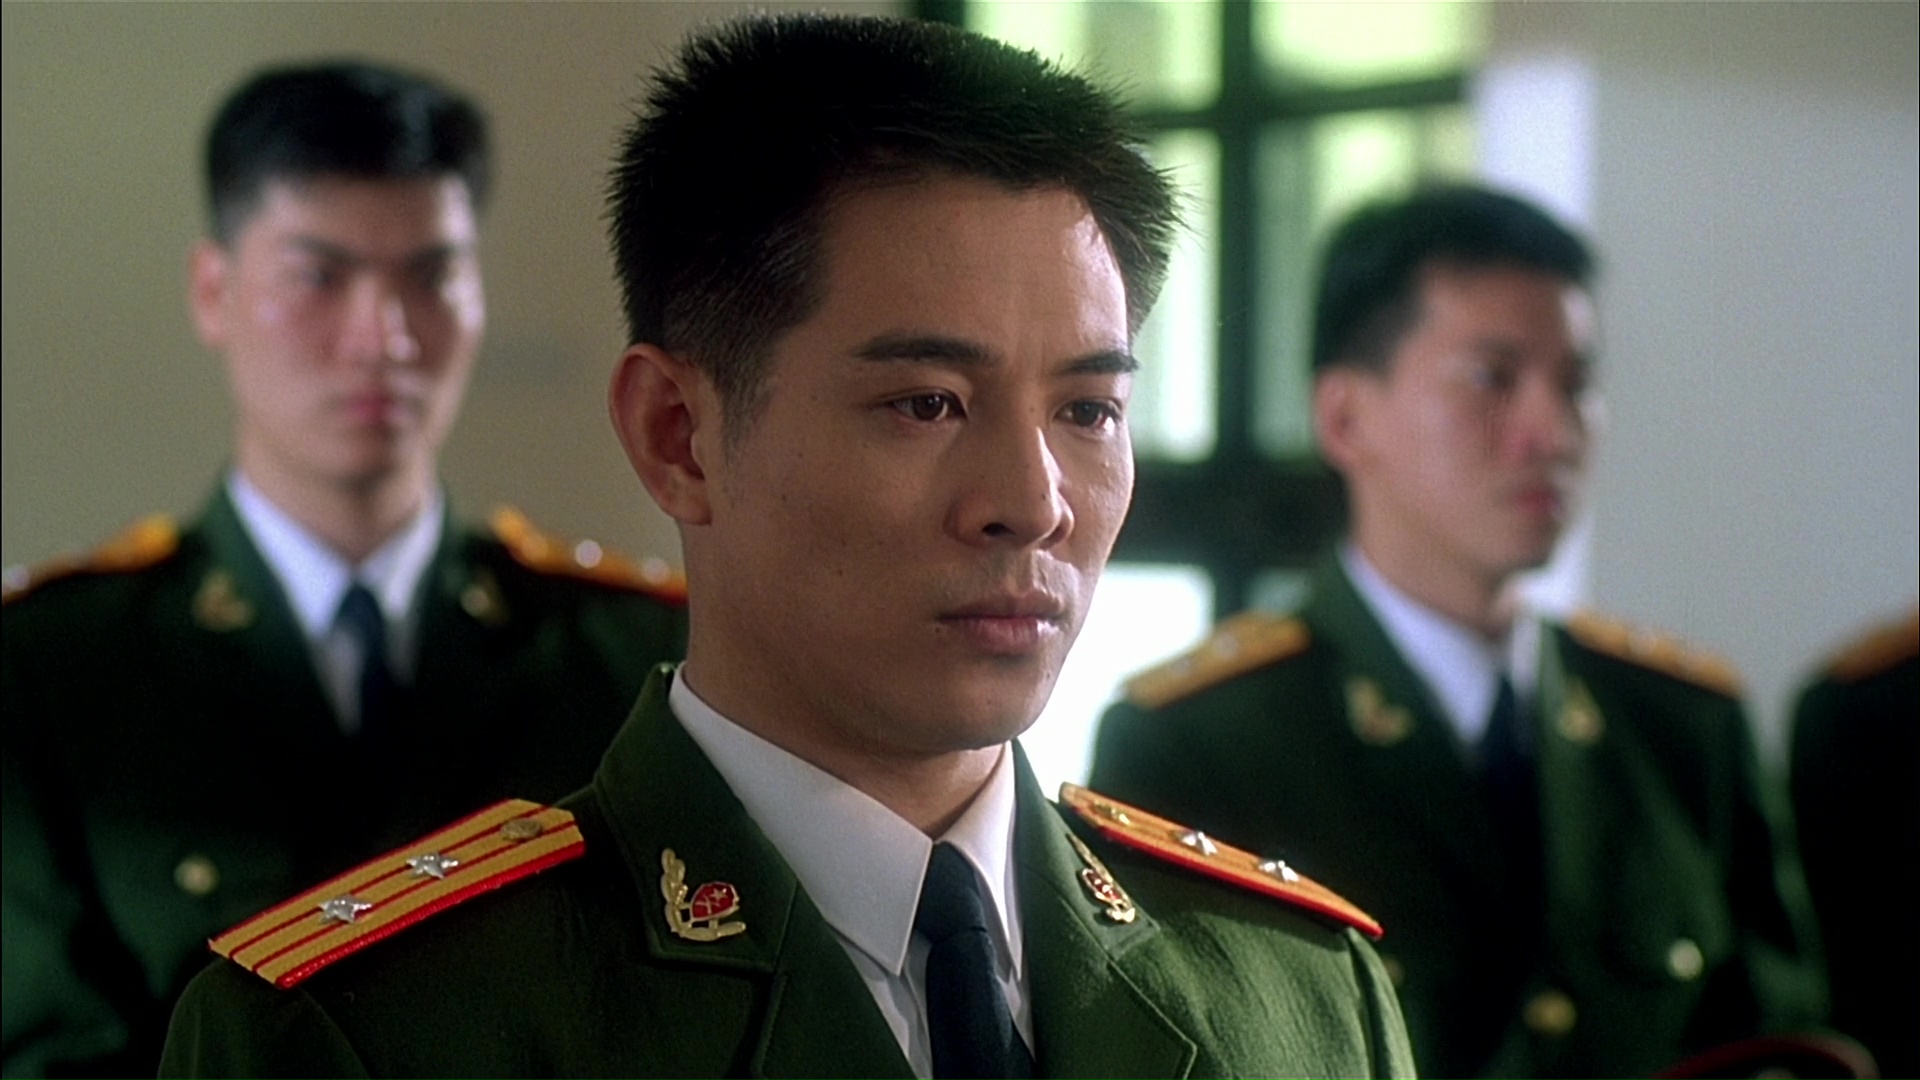 Телохранитель из Пекина / Zhong Nan Hai bao biao (The Defender) / 1994 / ПМ, АП (Визгунов, Живов) / WEB-DL (1080p)